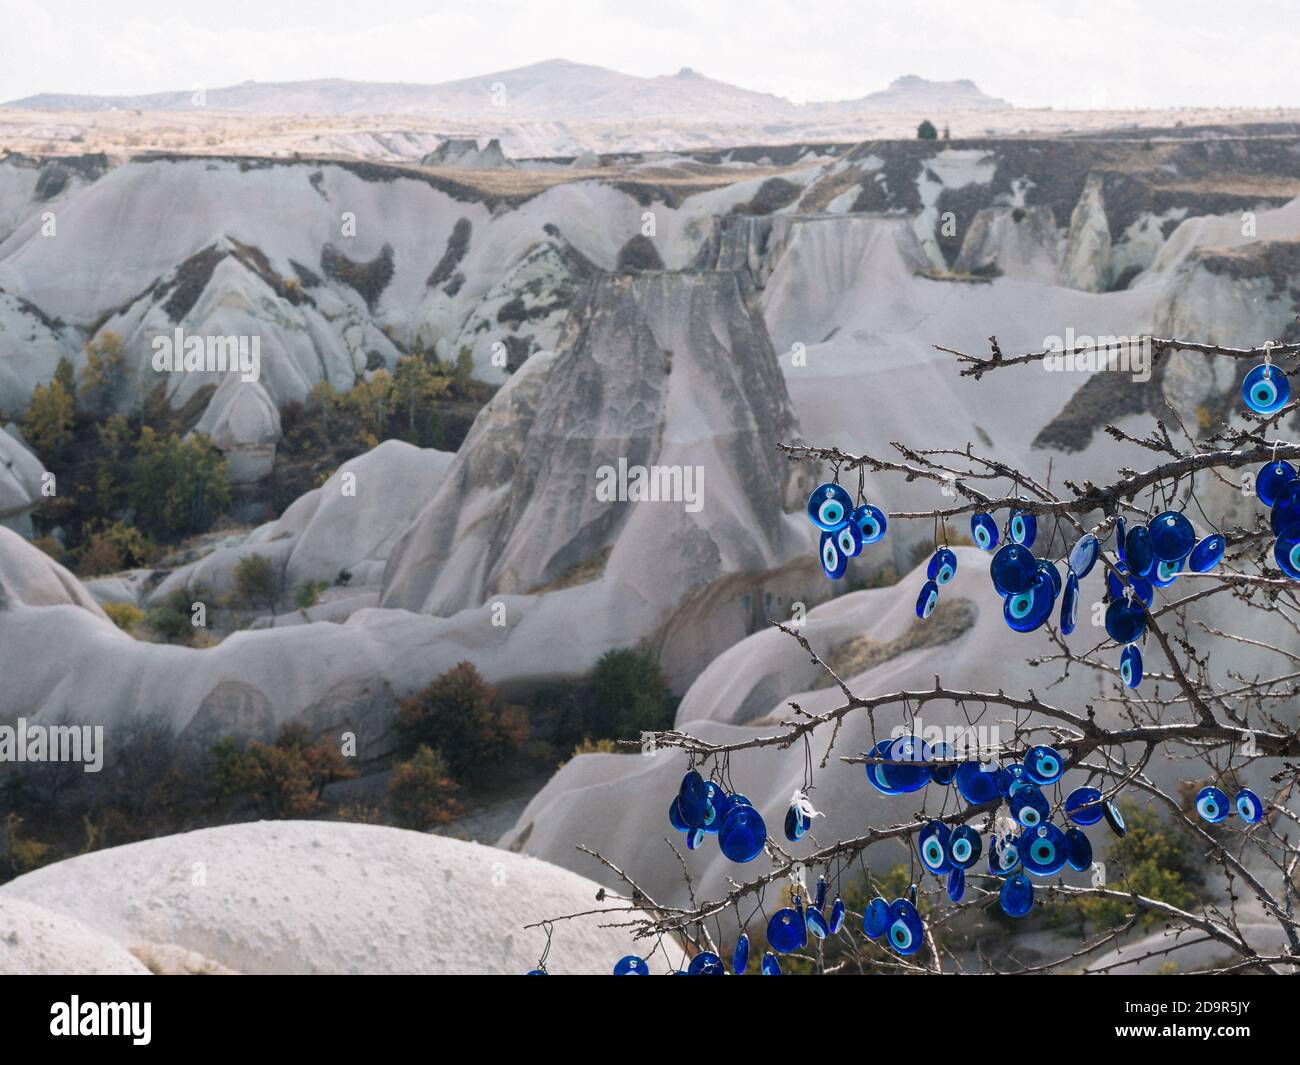 https://c8.alamy.com/compde/2d9r5jy/turkisches-nazar-amulett-blaues-auge-hangt-an-einem-baum-vor-dem-hintergrund-der-berglandschaft-von-kappadokien-aus-blauem-glas-2d9r5jy.jpg